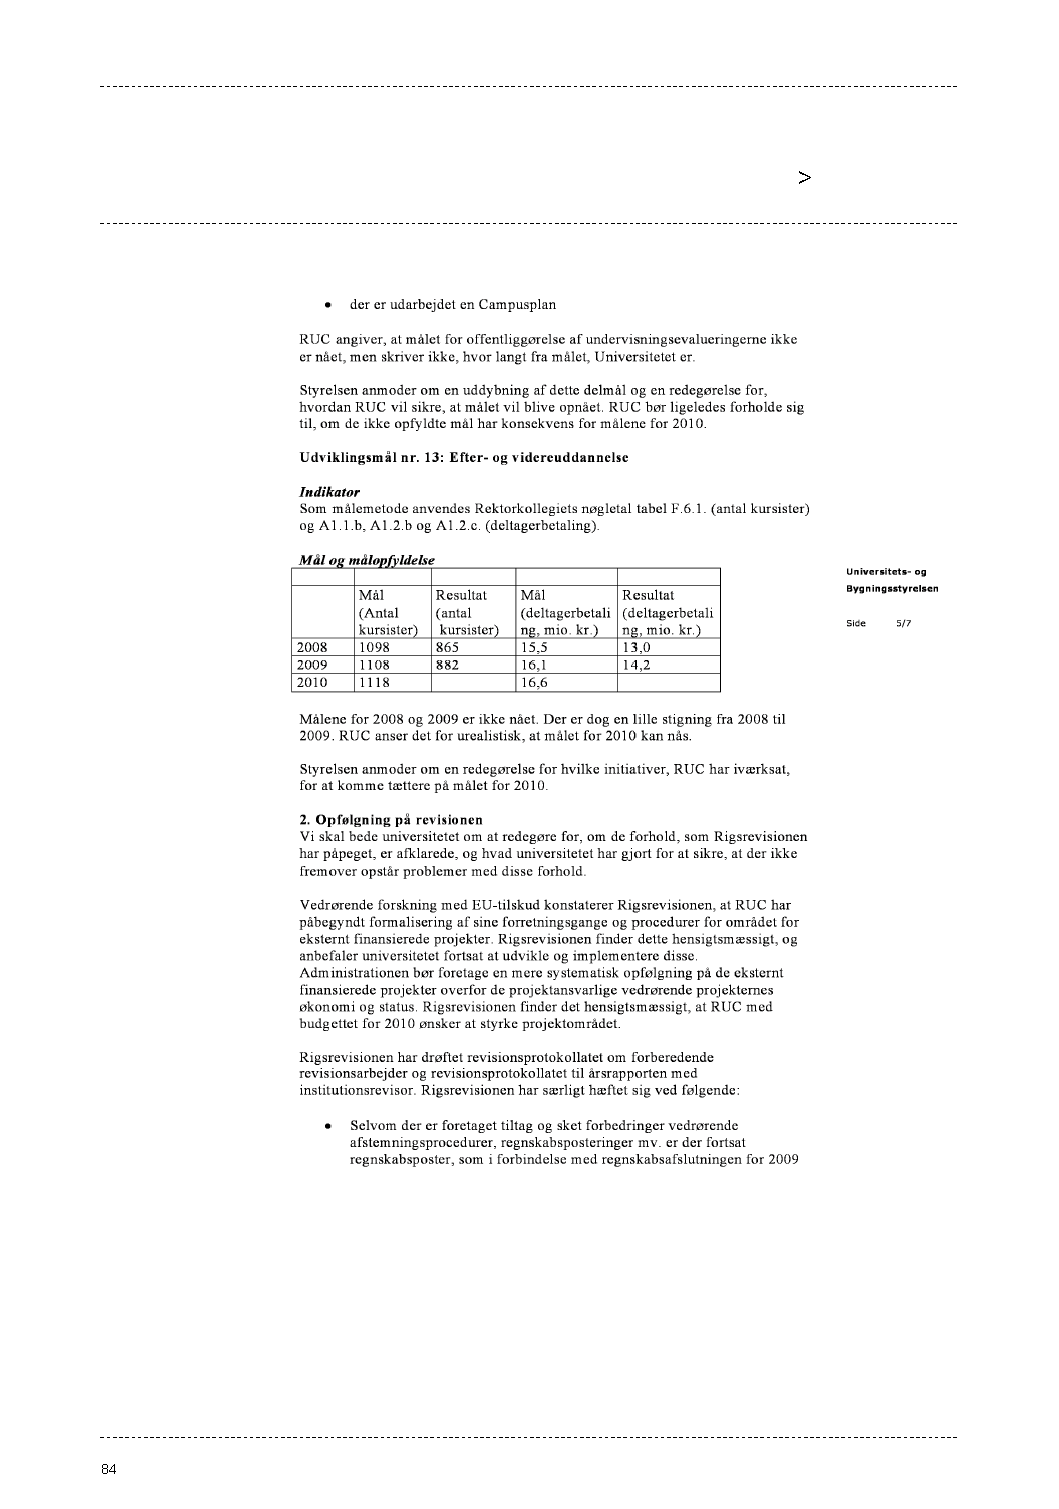 Bilag 1: Universitets- og Bygningsstyrelsens opfølgningsbrev på Roskilde Universitets årsrapport af 30. juni 2010